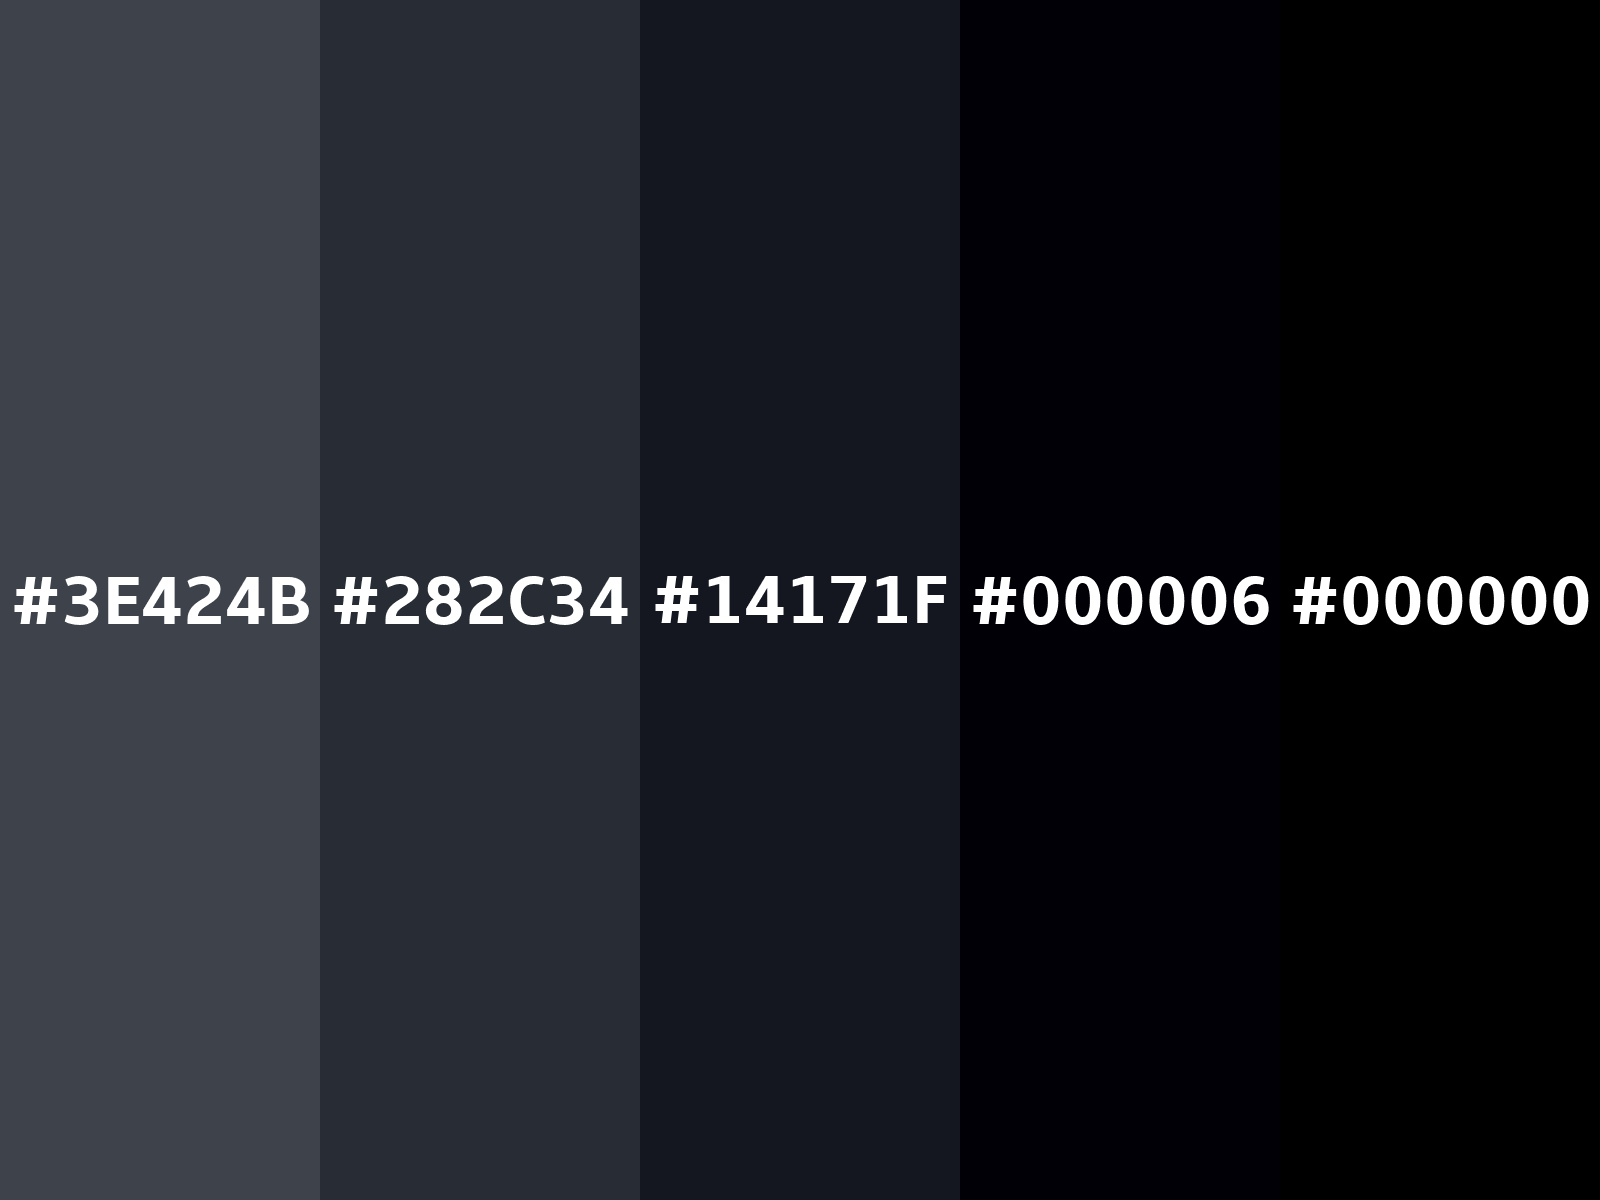 Mã màu RGB: Bạn có biết mã màu RGB là gì không? Hãy xem hình ảnh liên quan để khám phá những màu sắc tuyệt đẹp và sử dụng mã màu này để tô điểm cho những thiết kế của bạn.